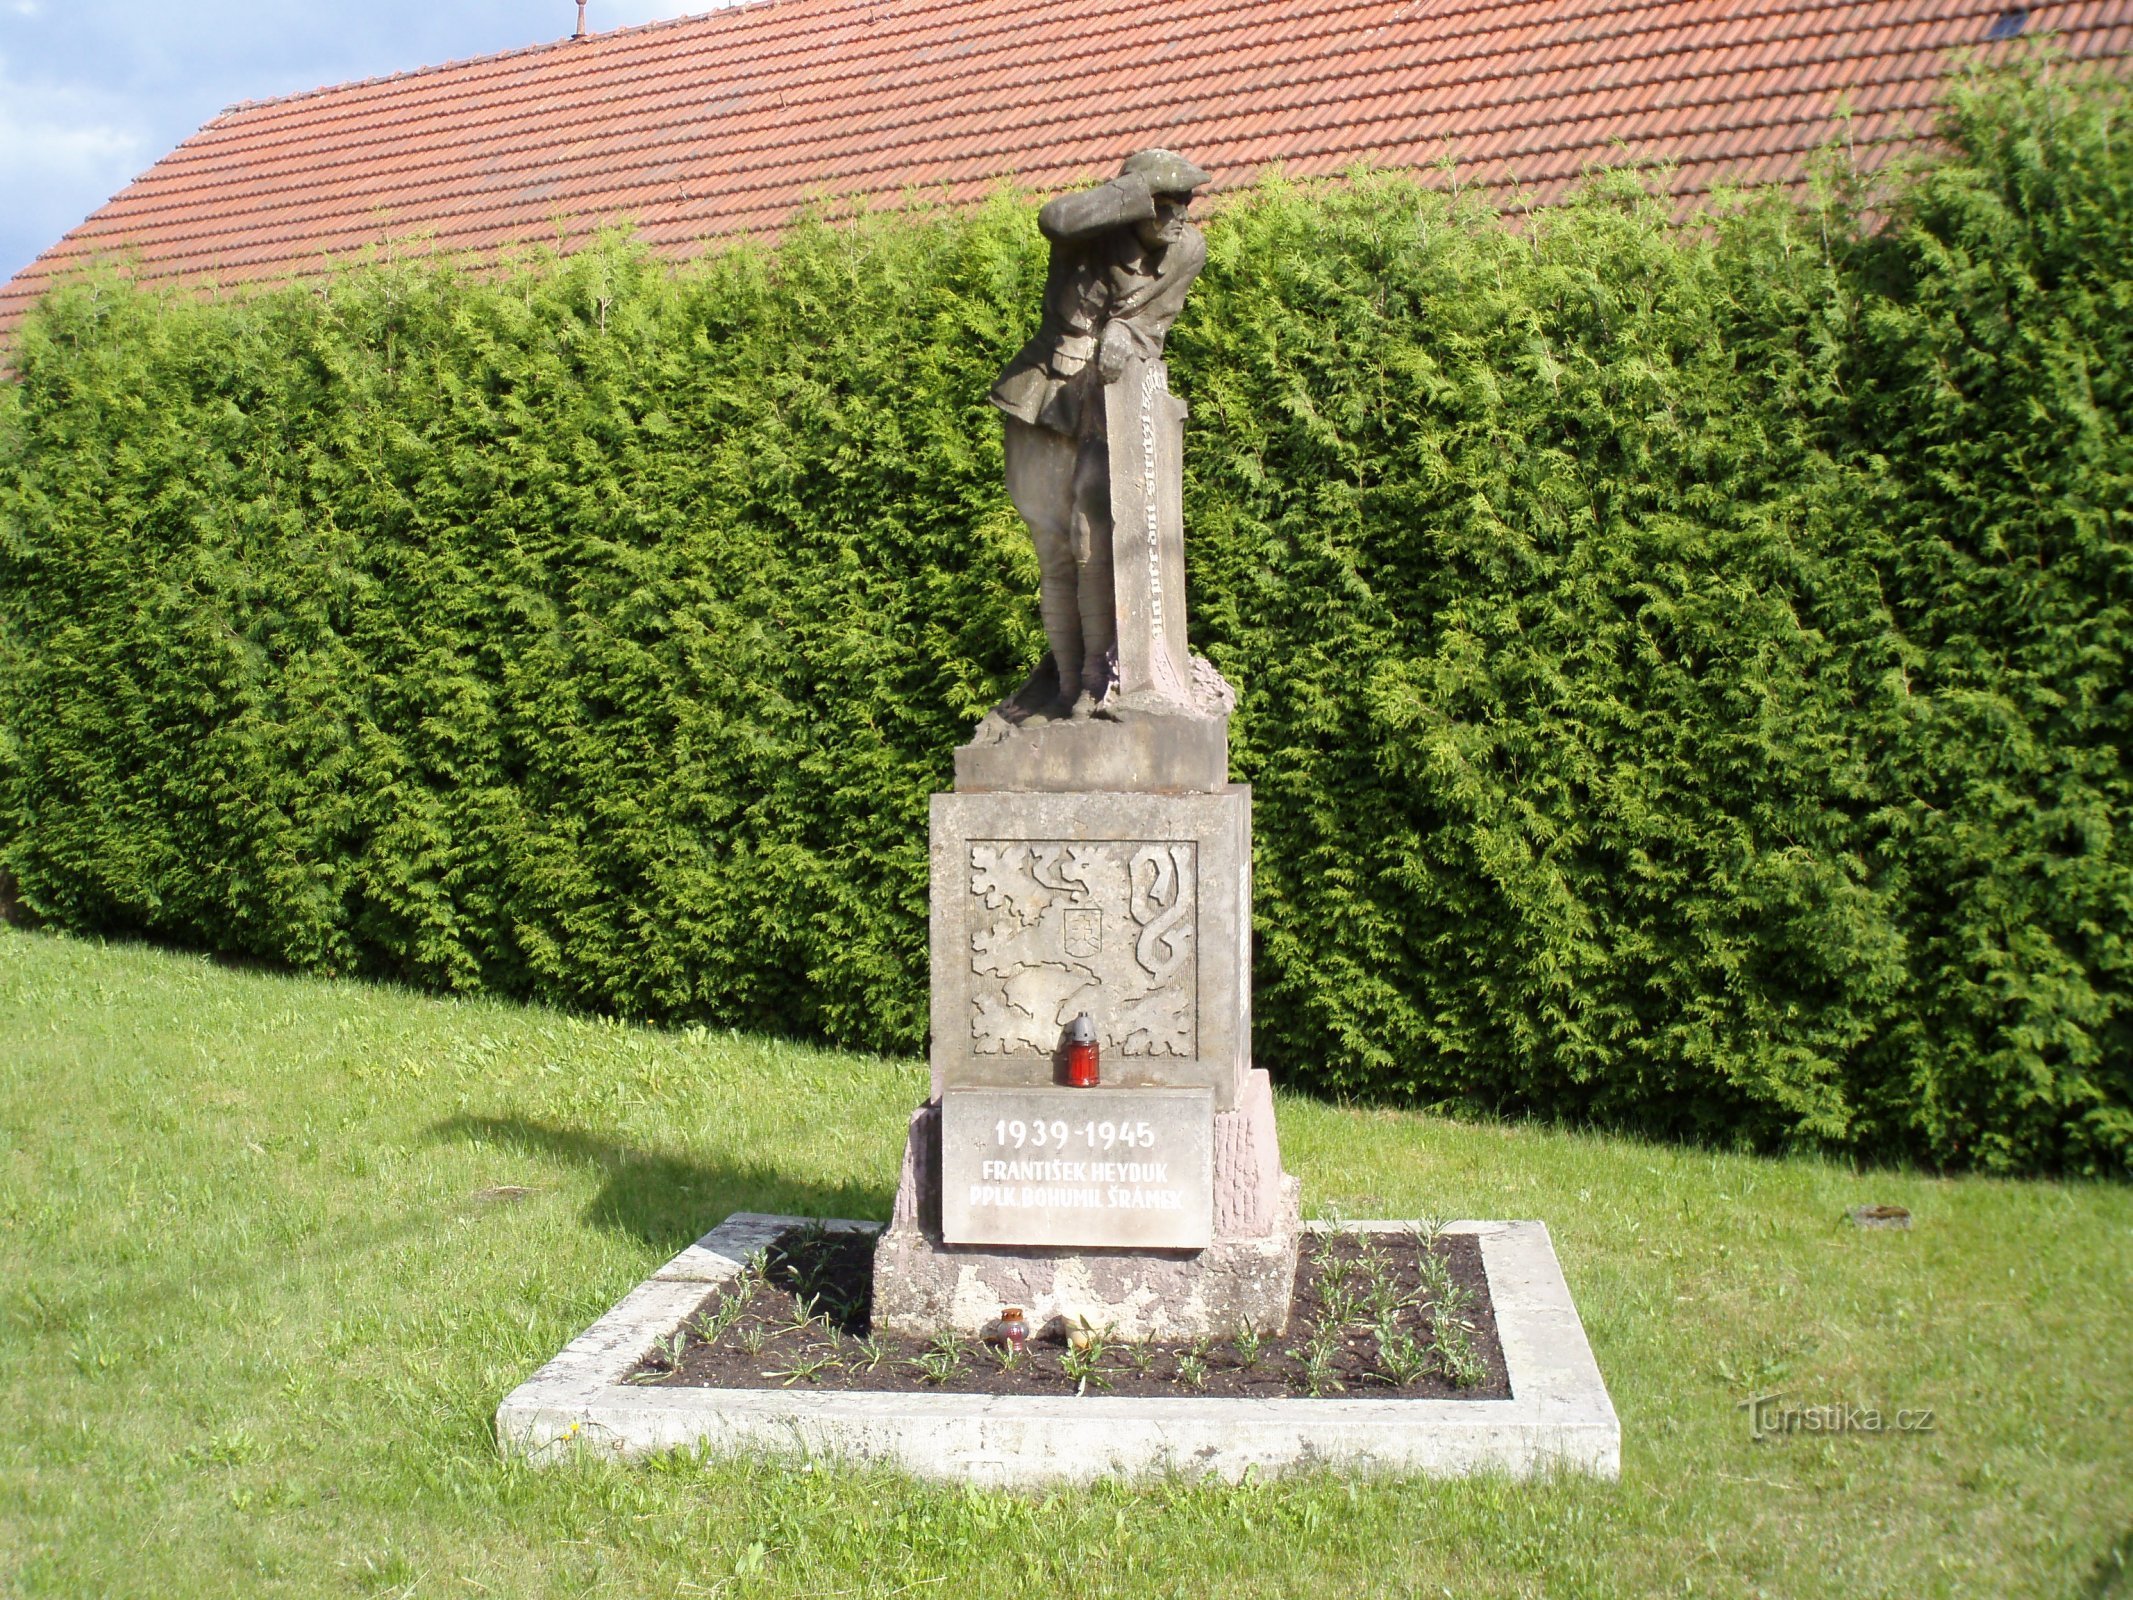 Ensimmäisessä maailmansodassa kuolleiden muistomerkki Svinaryssa (Hradec Králové, 1. kesäkuuta 4.6.2009)